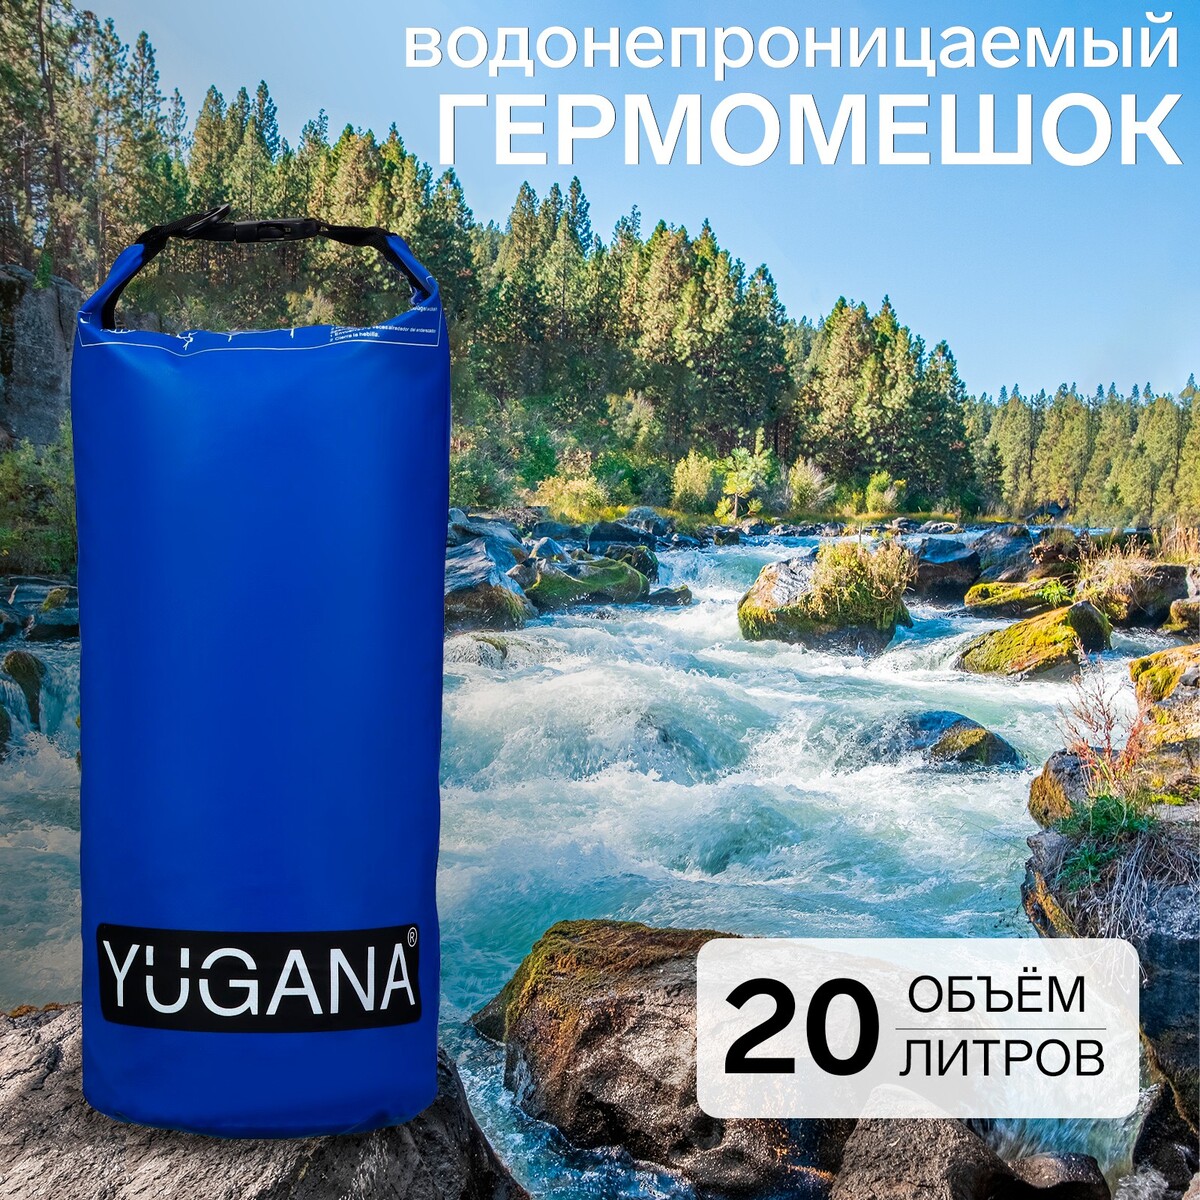 Гермомешок yugana, пвх, водонепроницаемый 20 литров, один ремень, синий